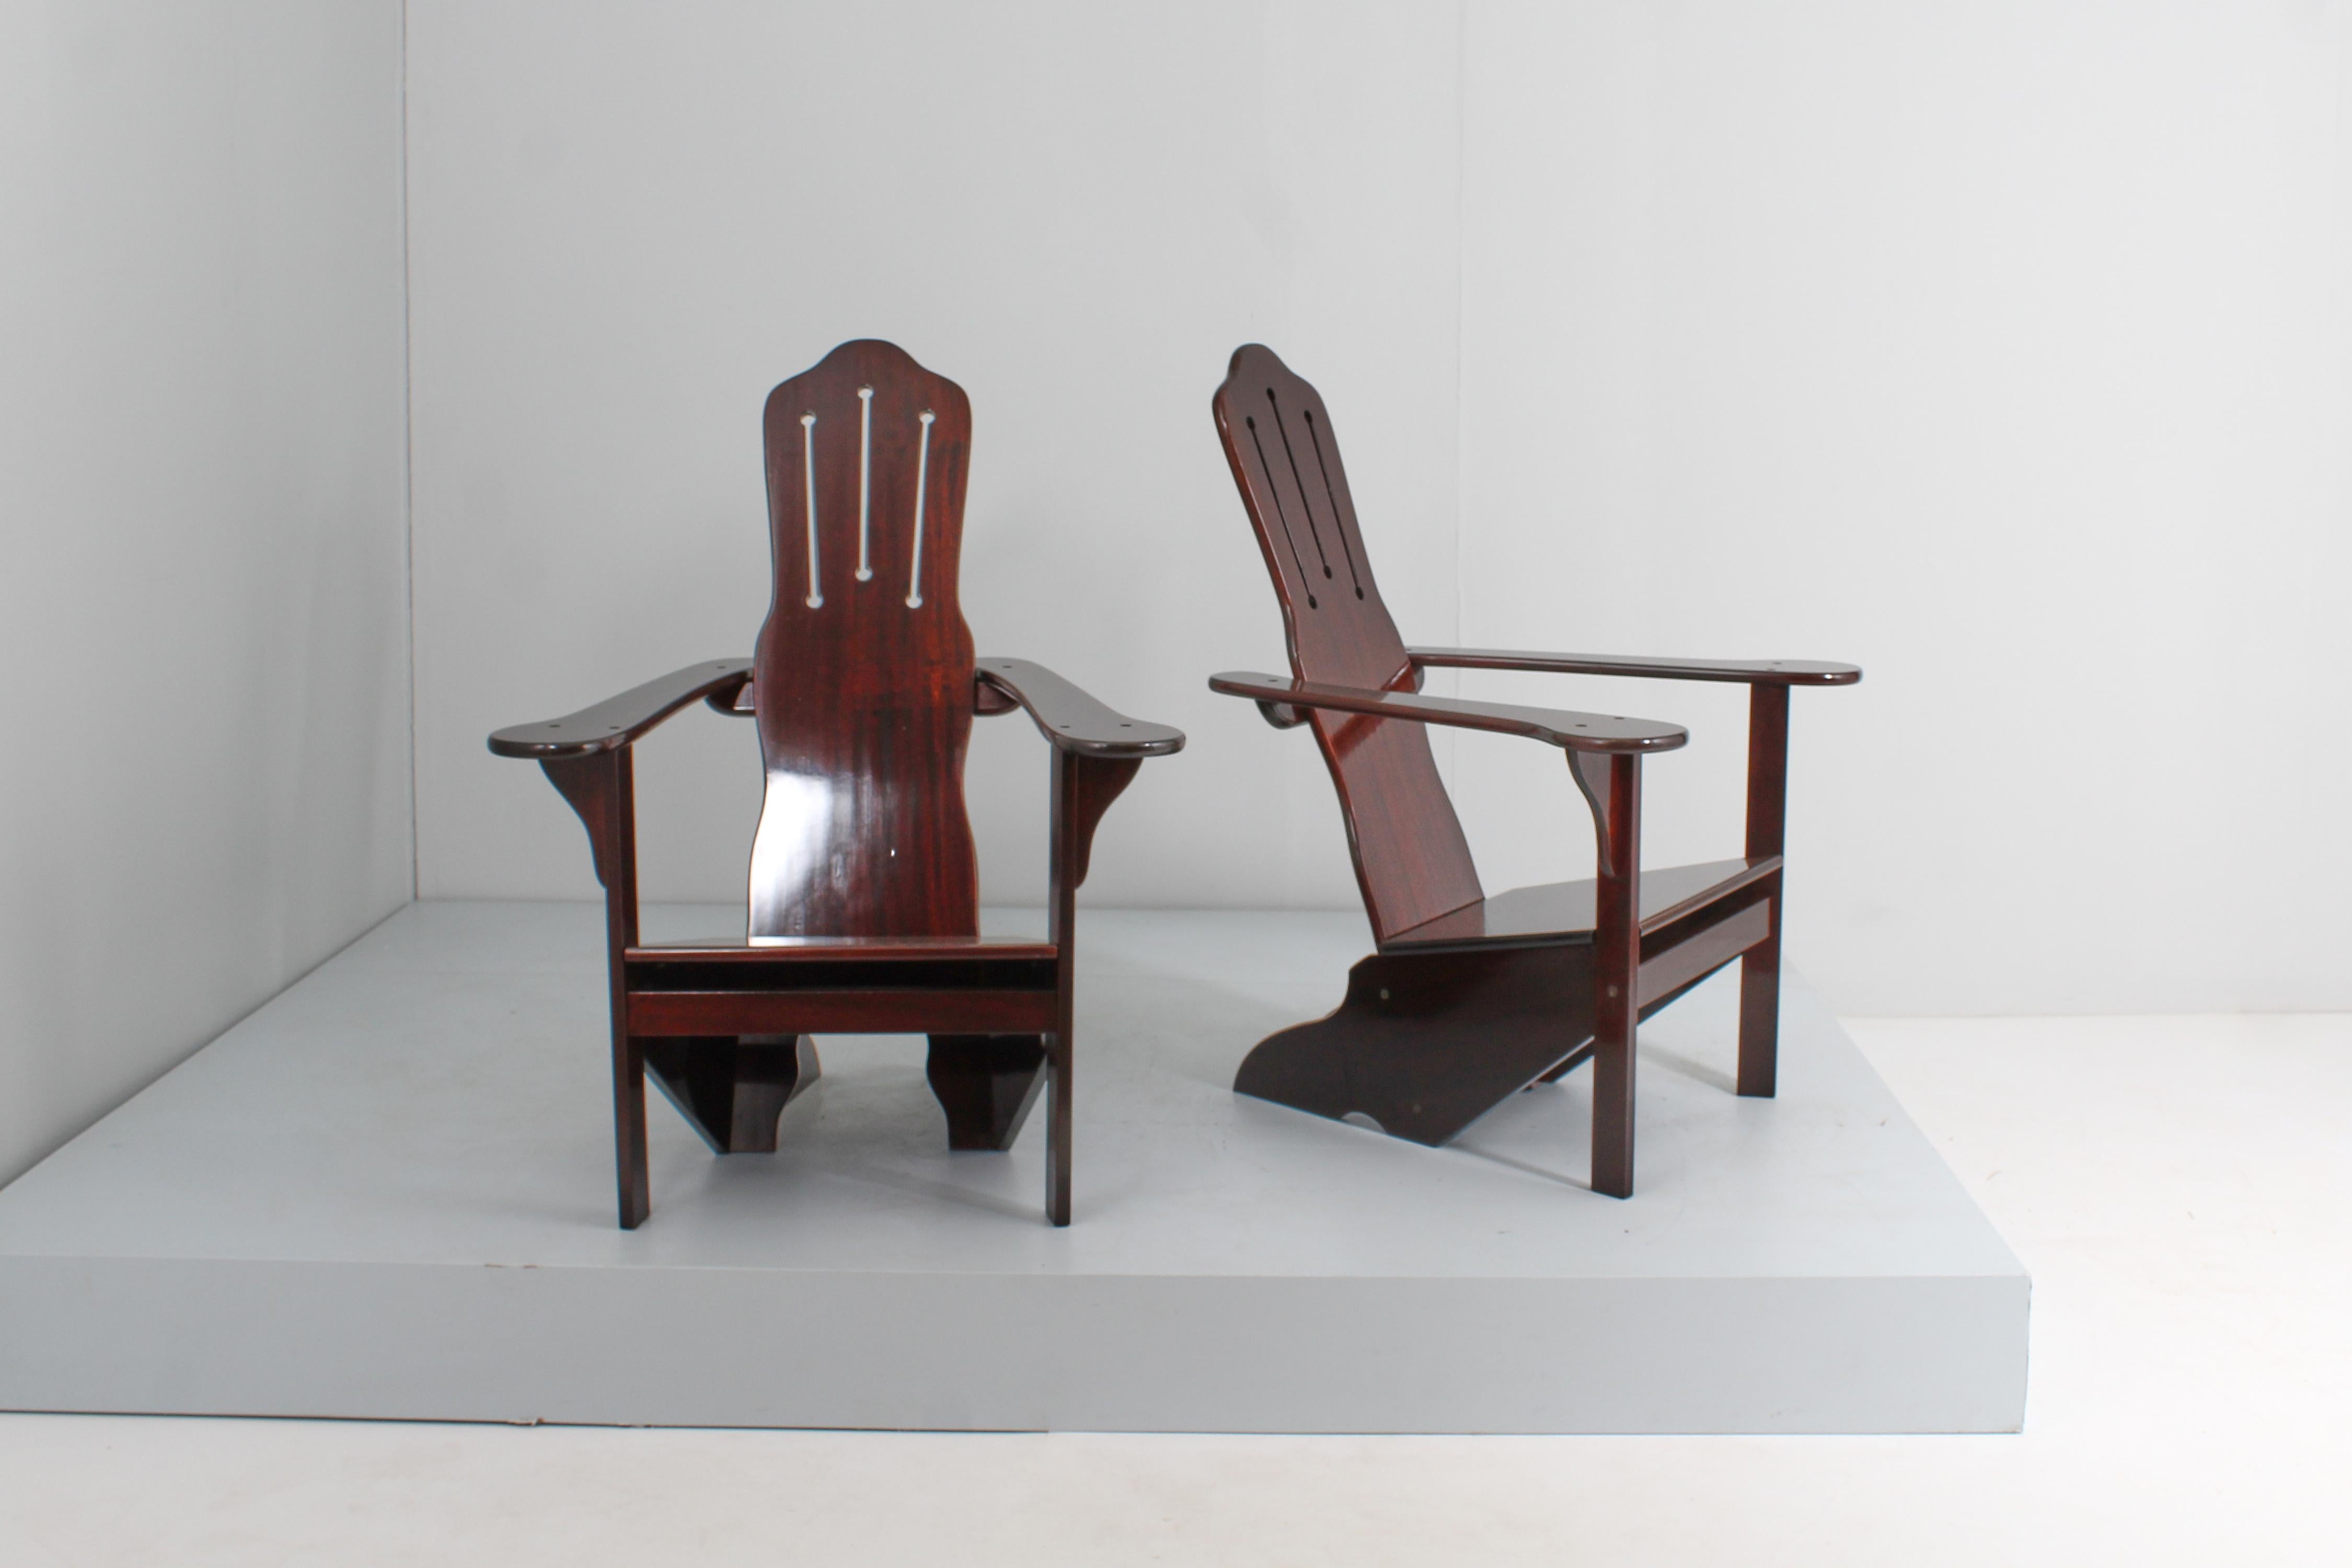 Imposanter und seltener Satz von 2 rationalistischen Stühlen mit geschwungenen und geraden Linien, sauber und prägnant, ganz aus Holz, restauriert. Zuzuordnen Gino Levi Montalcini, Italien 1970er Jahre.